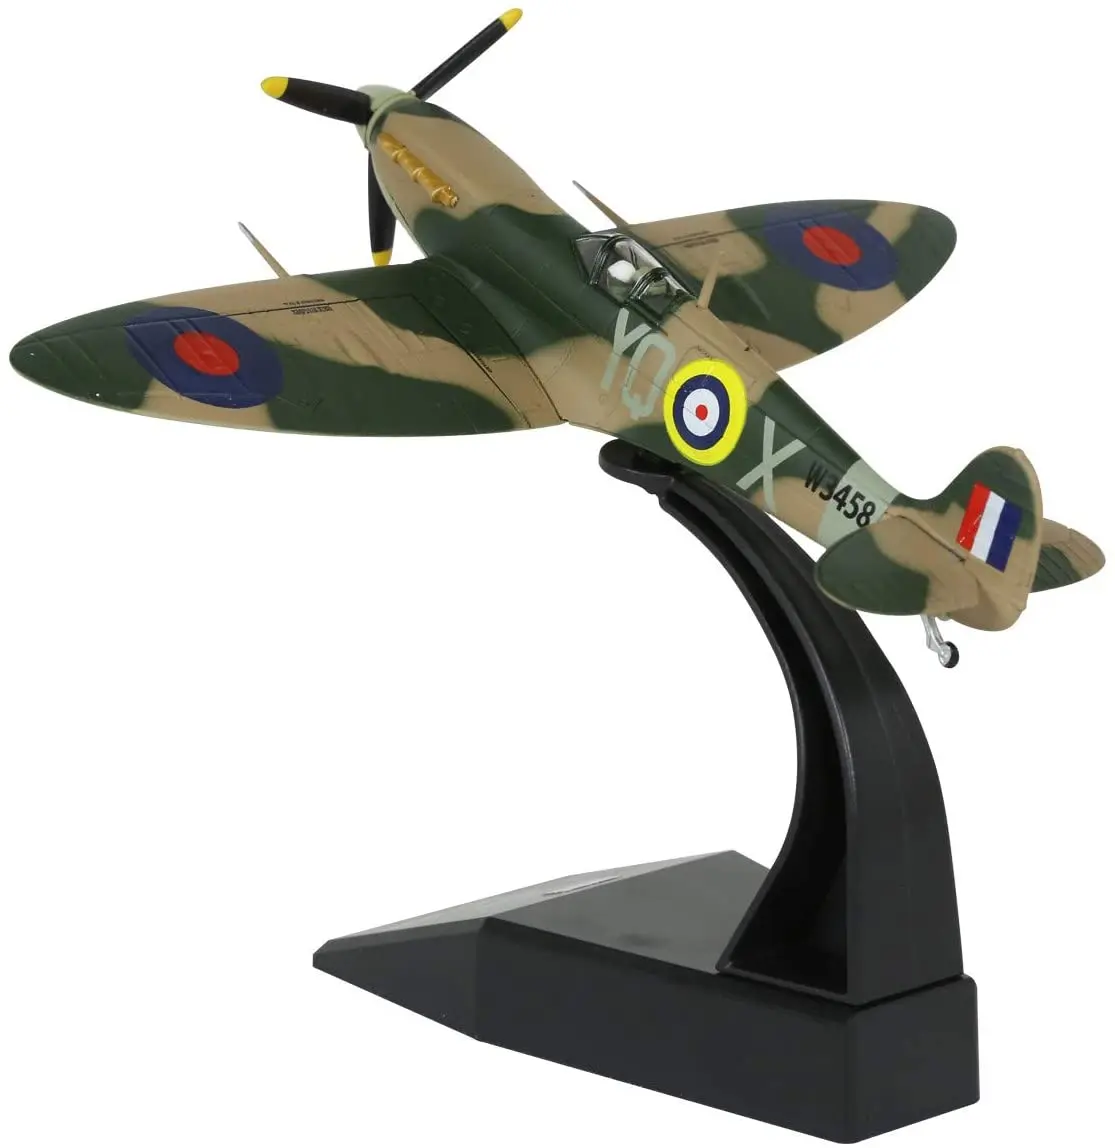 1/72 maßstab wwii british spitfire fighter flugzeug diecast metall flugzeug 